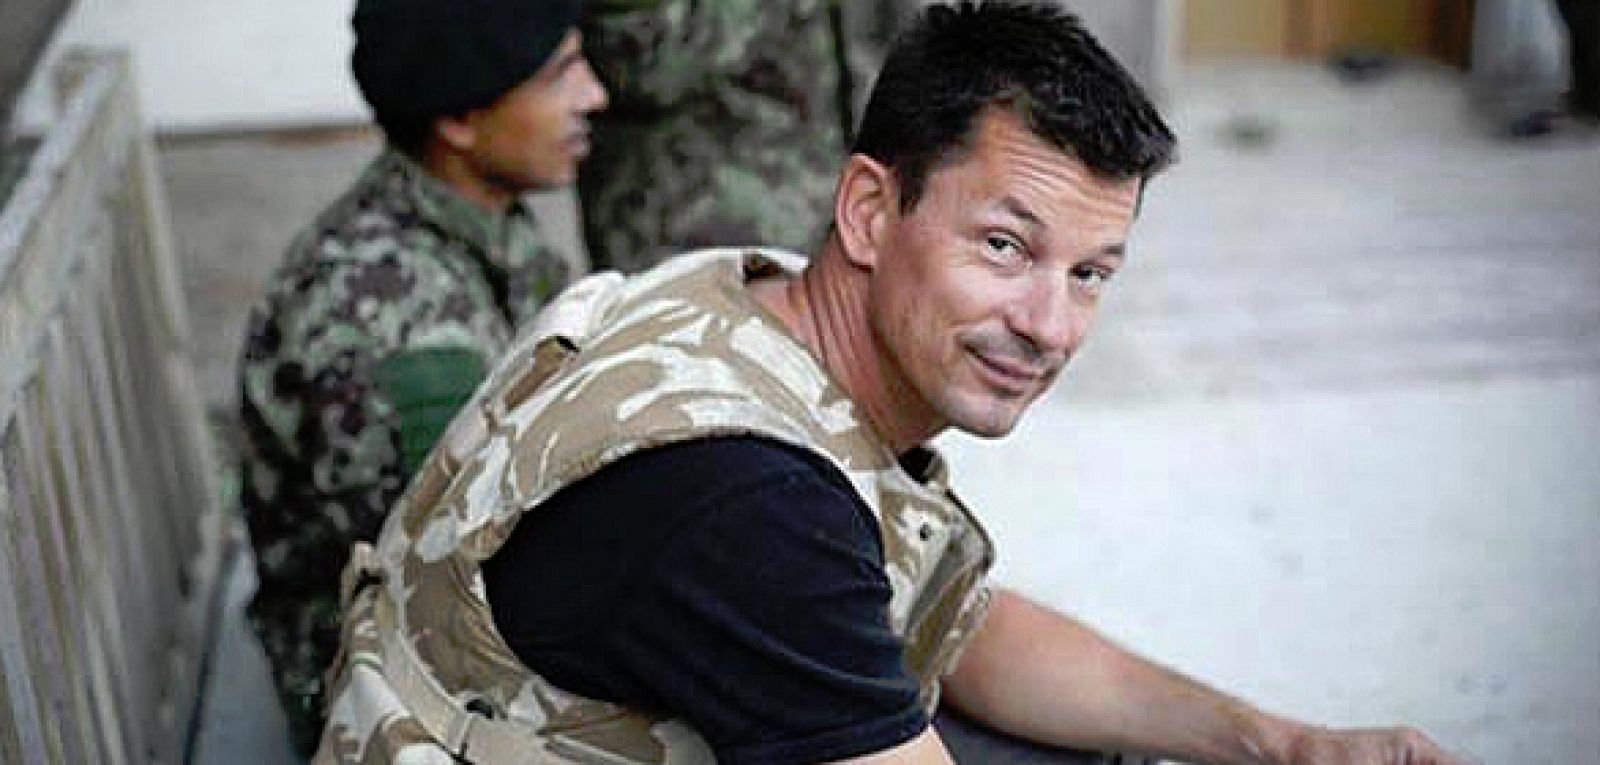 El fotoperiodista británico, John Cantlie, en una imágen de archivo